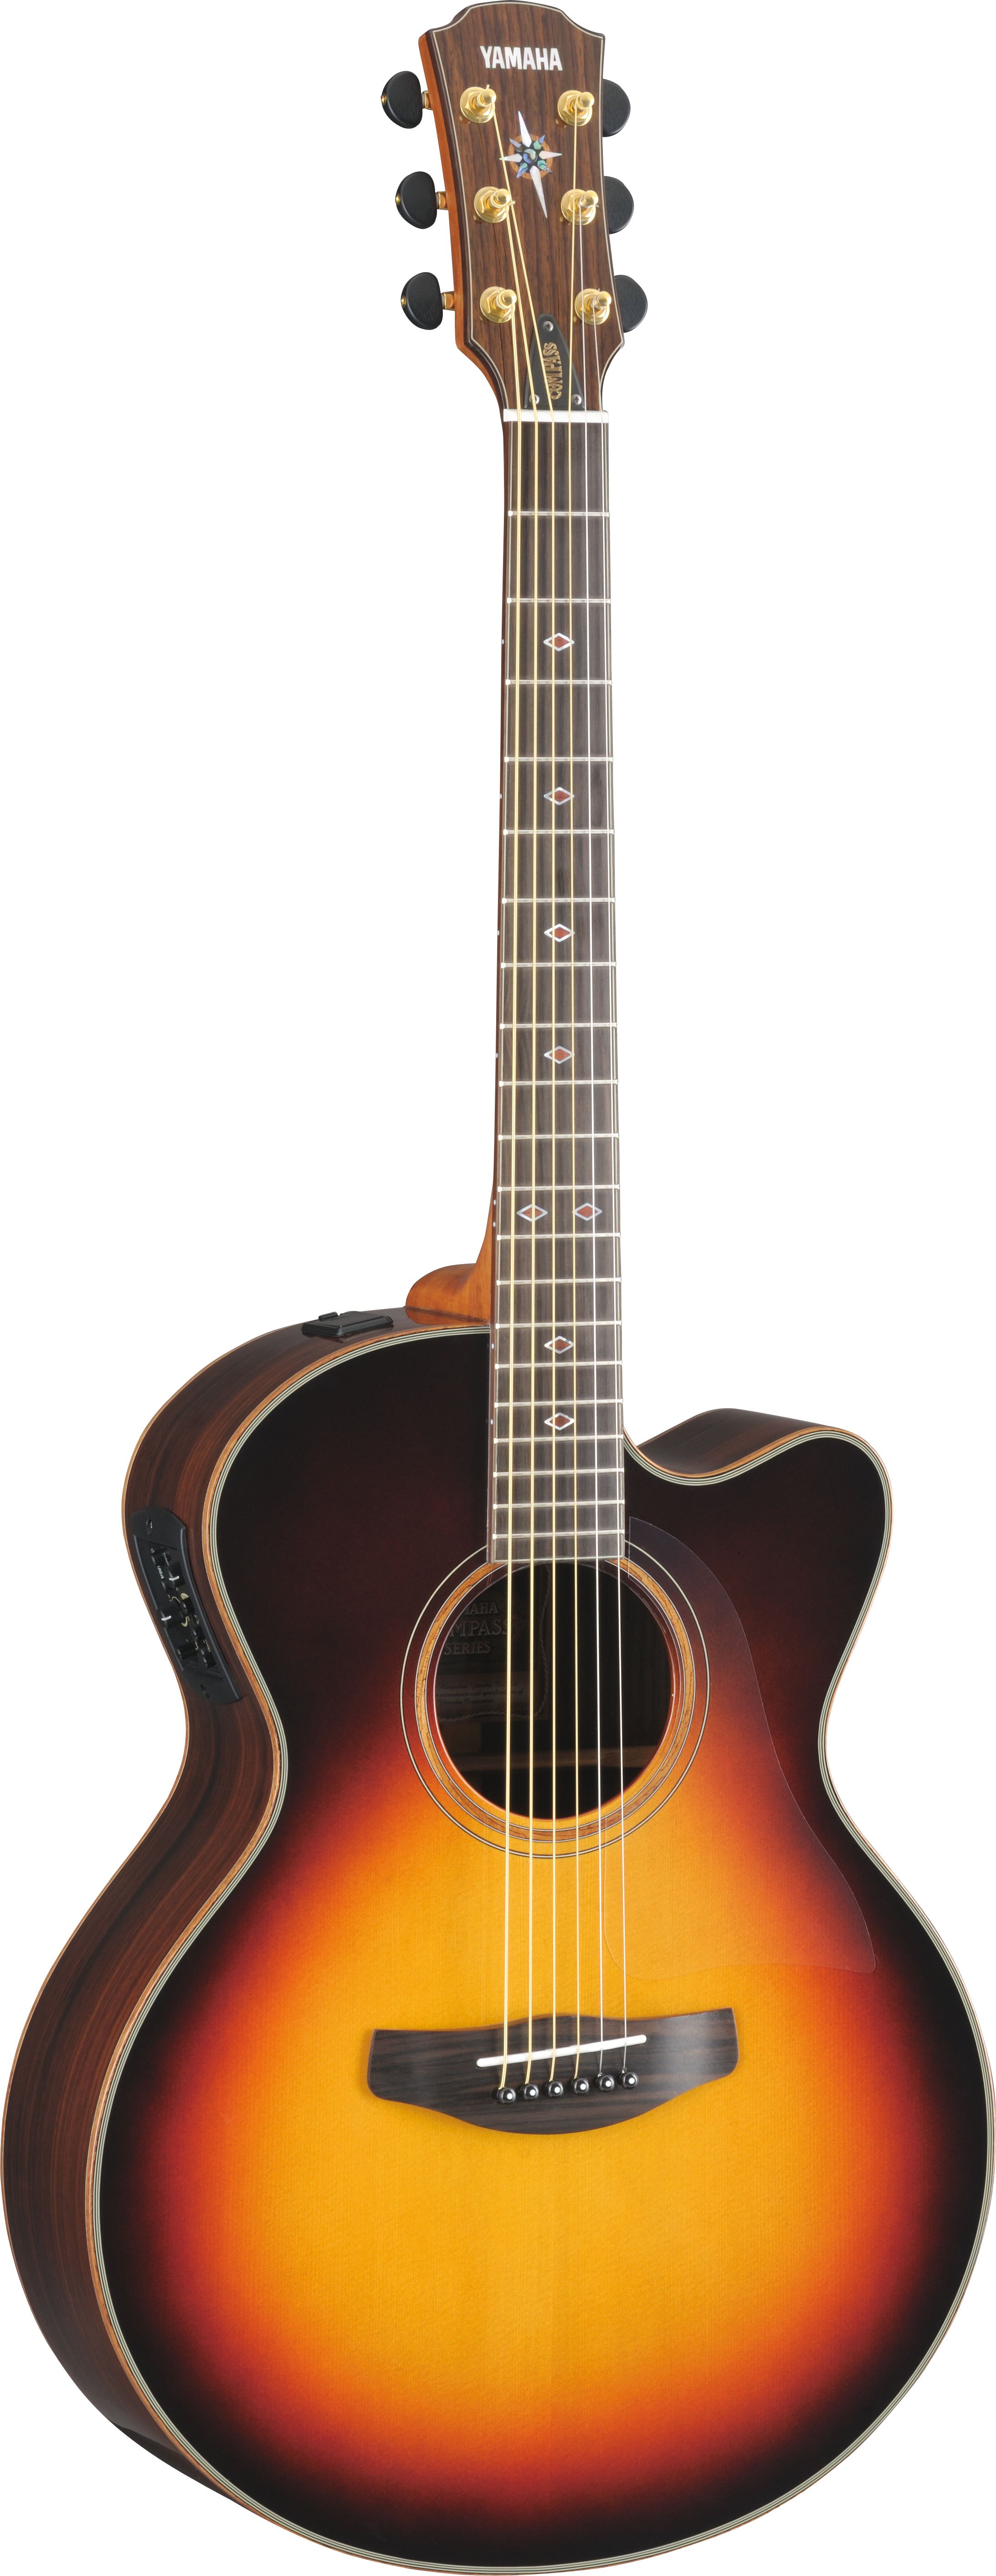 ヤマハ | CPX1200 - アコースティックギター - 概要